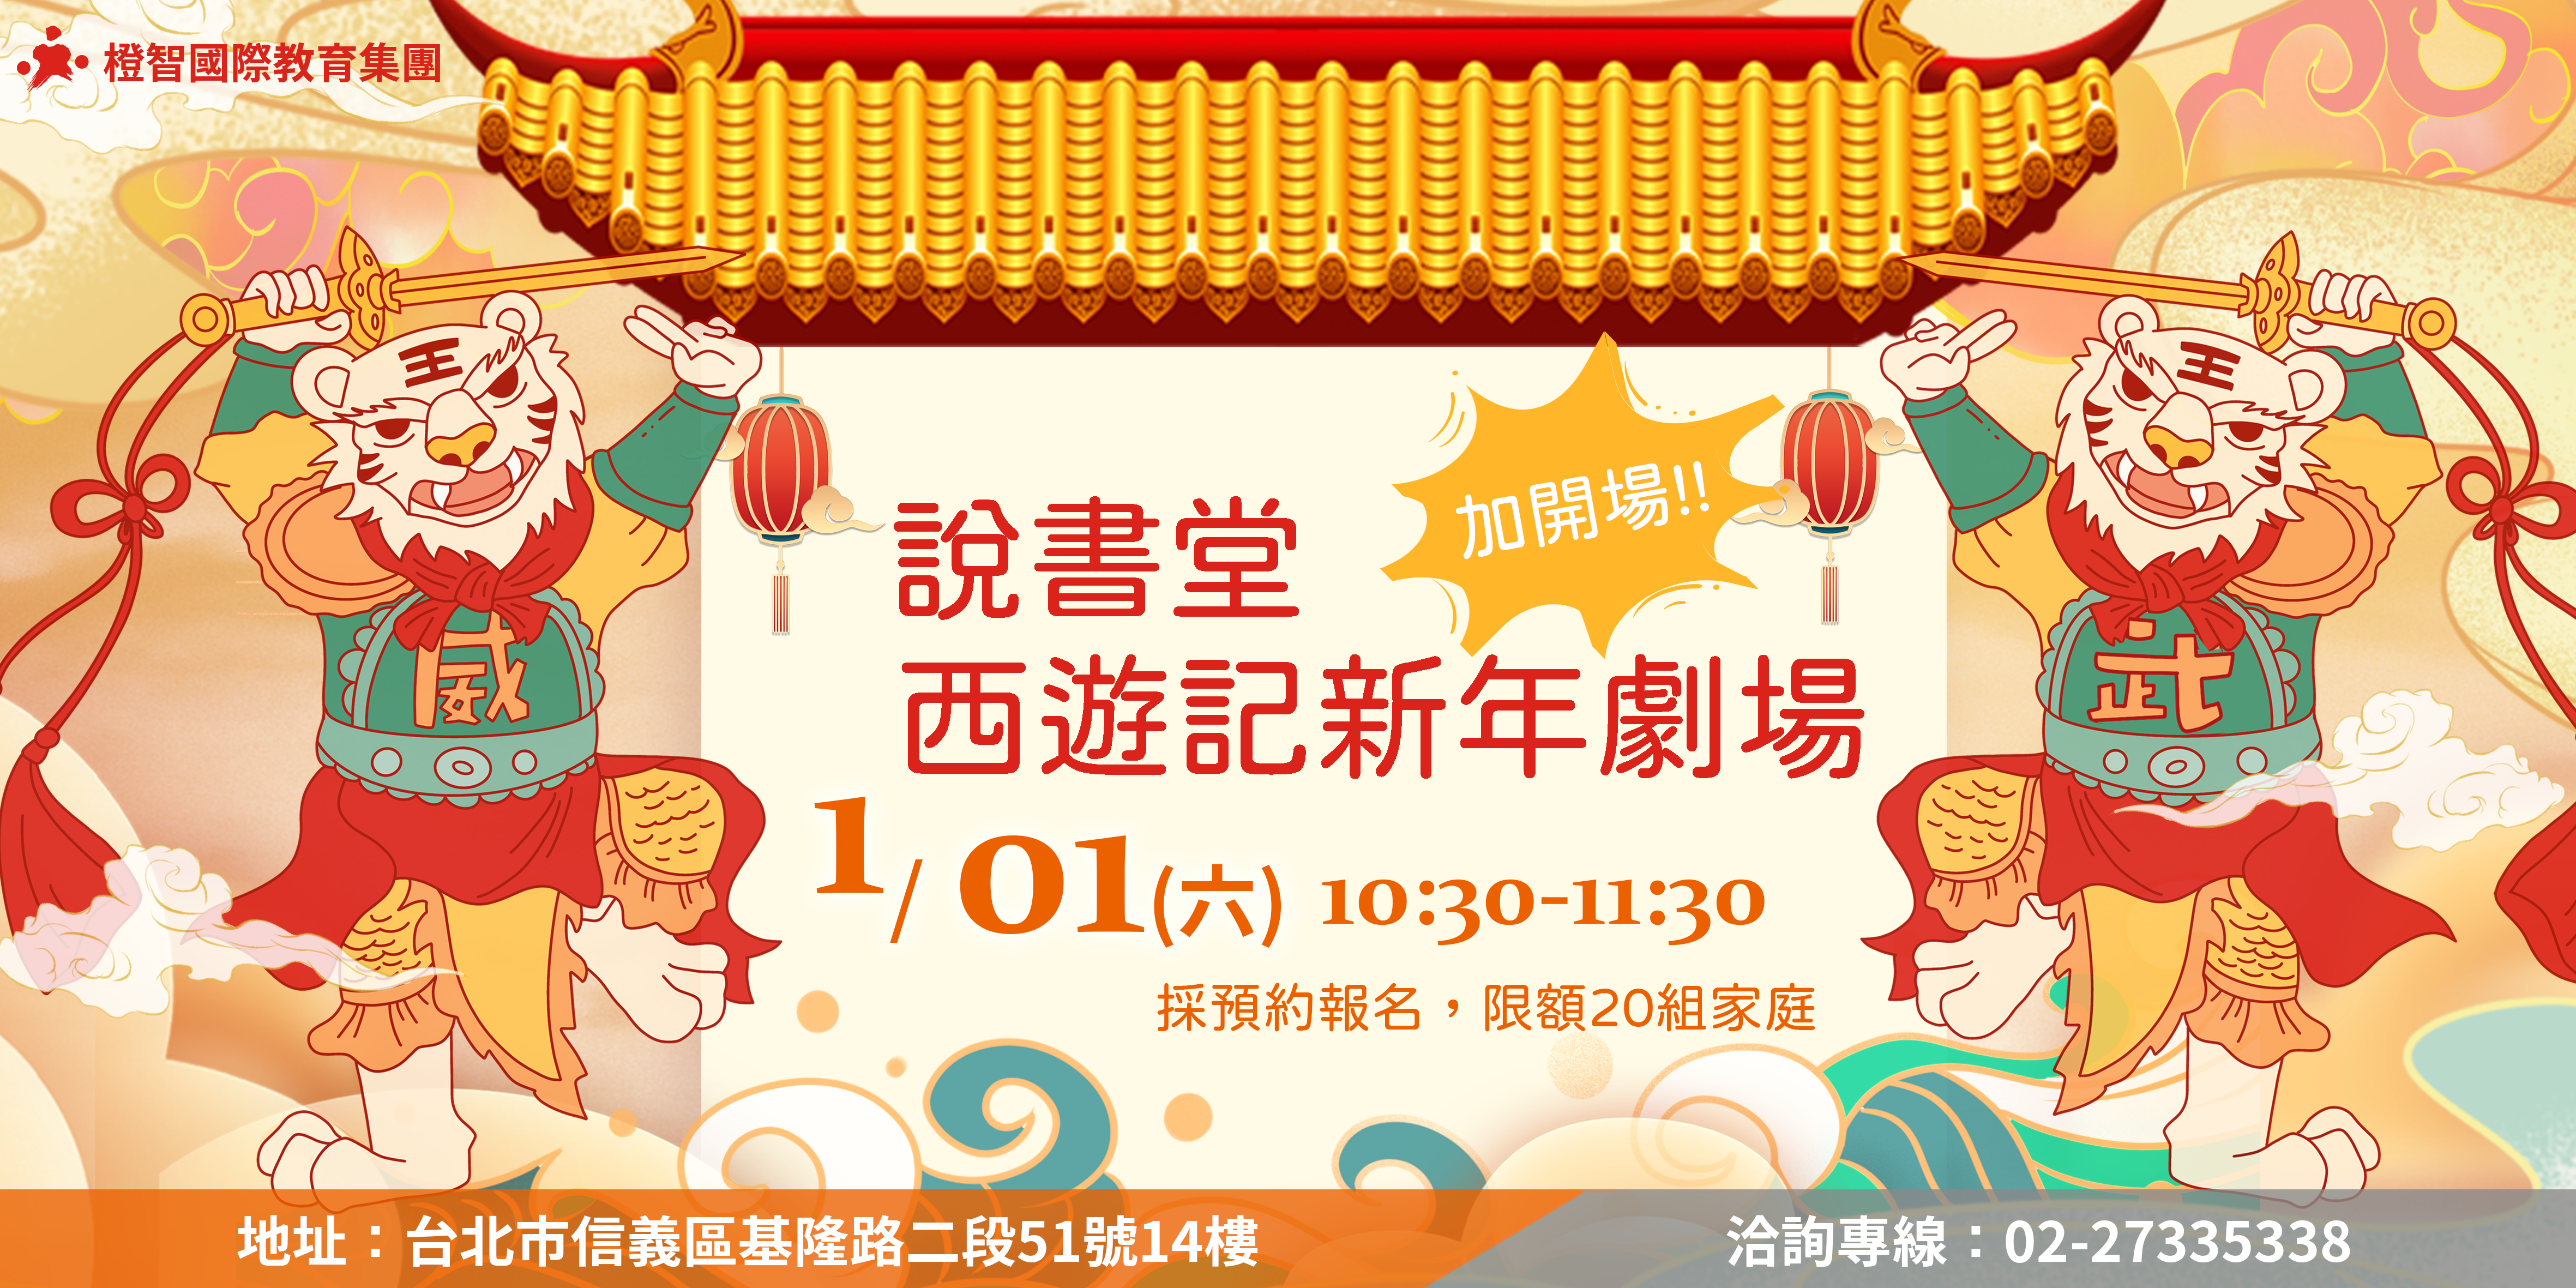 【台北教育中心】『中文力說書堂』西遊記新年劇場，與您歡喜迎新年，圓滿結束!!